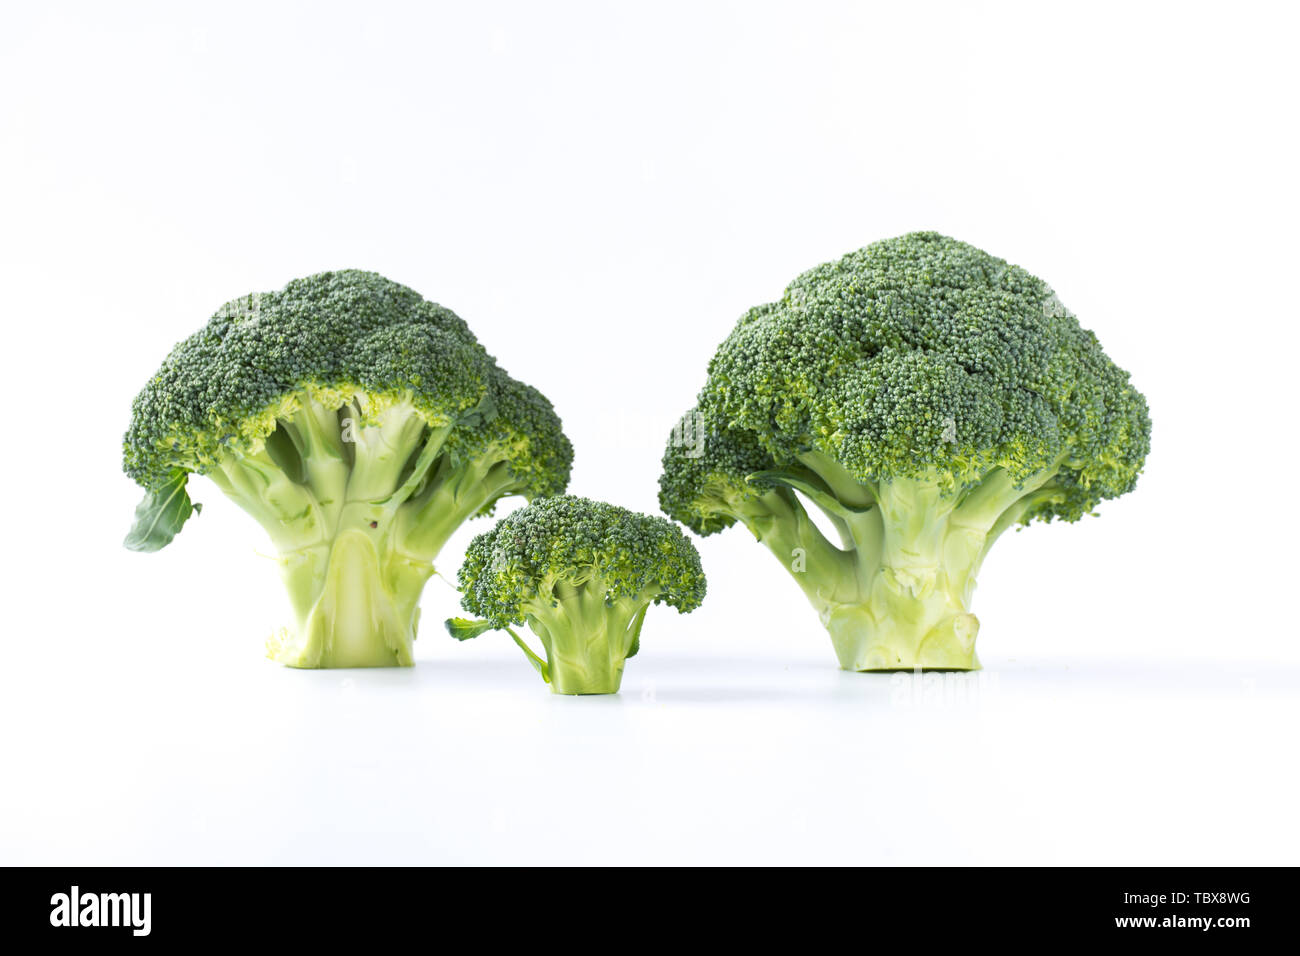 Cauliflower, scientific name broccoli, also known as mustard blue, broccoli, broccoli flower. Stock Photo